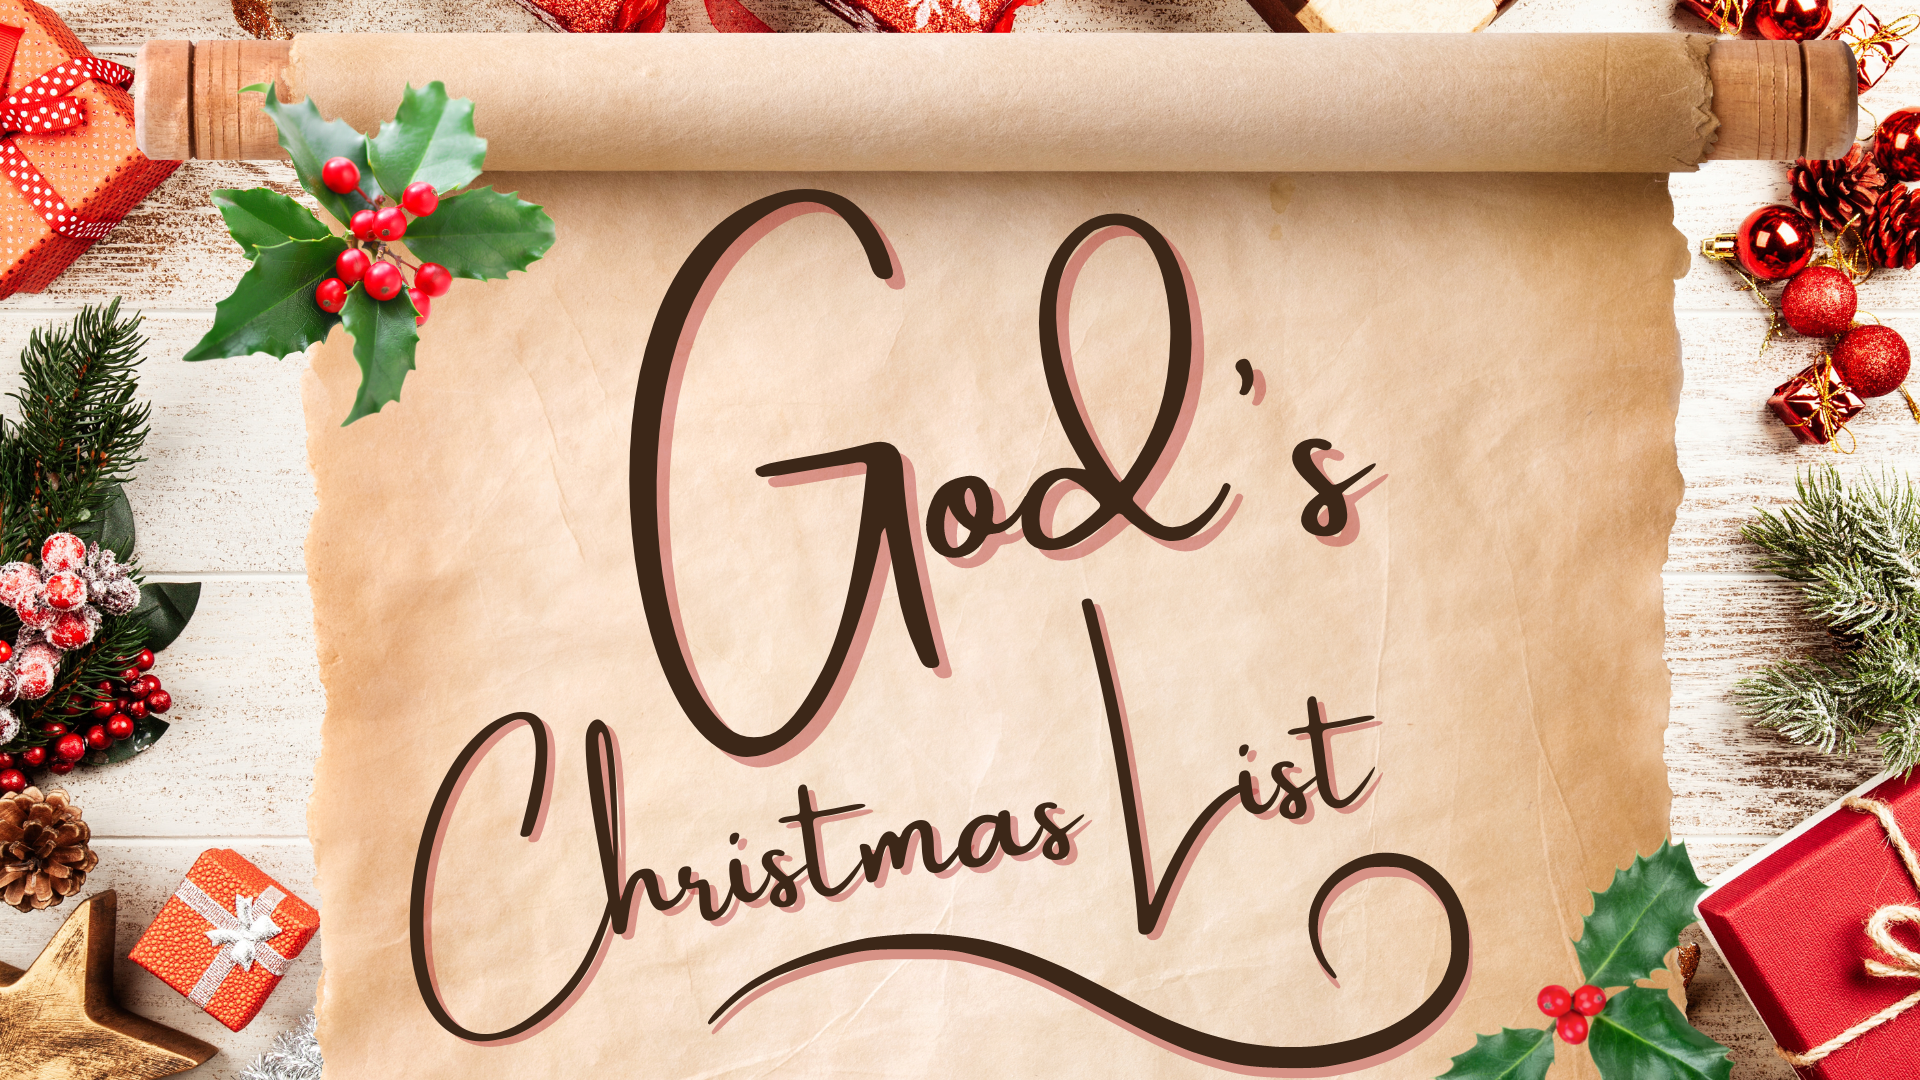 God's Christmas List: A Family